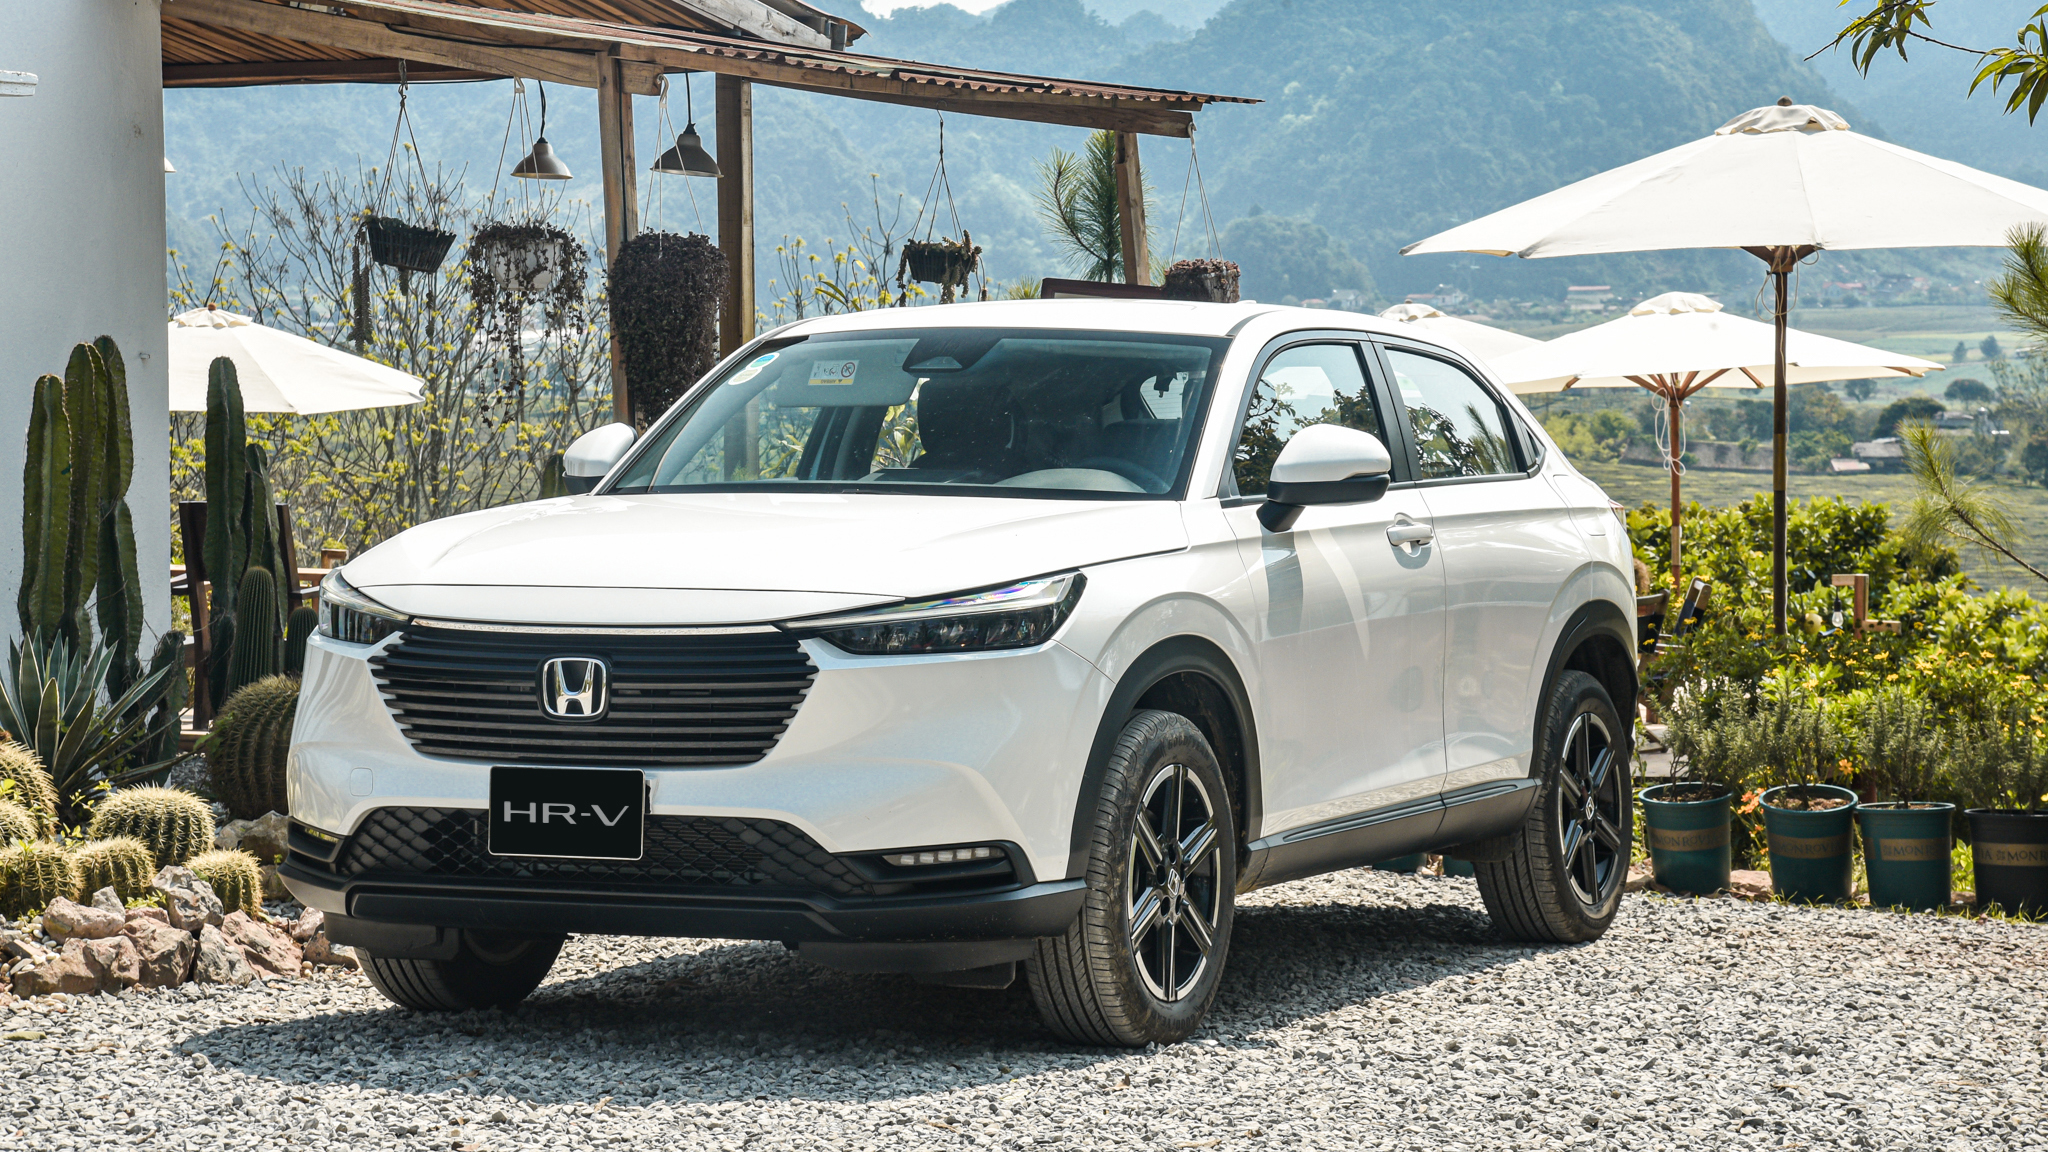 Honda HR-V khuyến mãi 50% LỆ PHÍ TRƯỚC BẠ tháng 1-2024. Honda Ôtô Khánh Hòa - Nha Trang | Hotline 0905 254 255